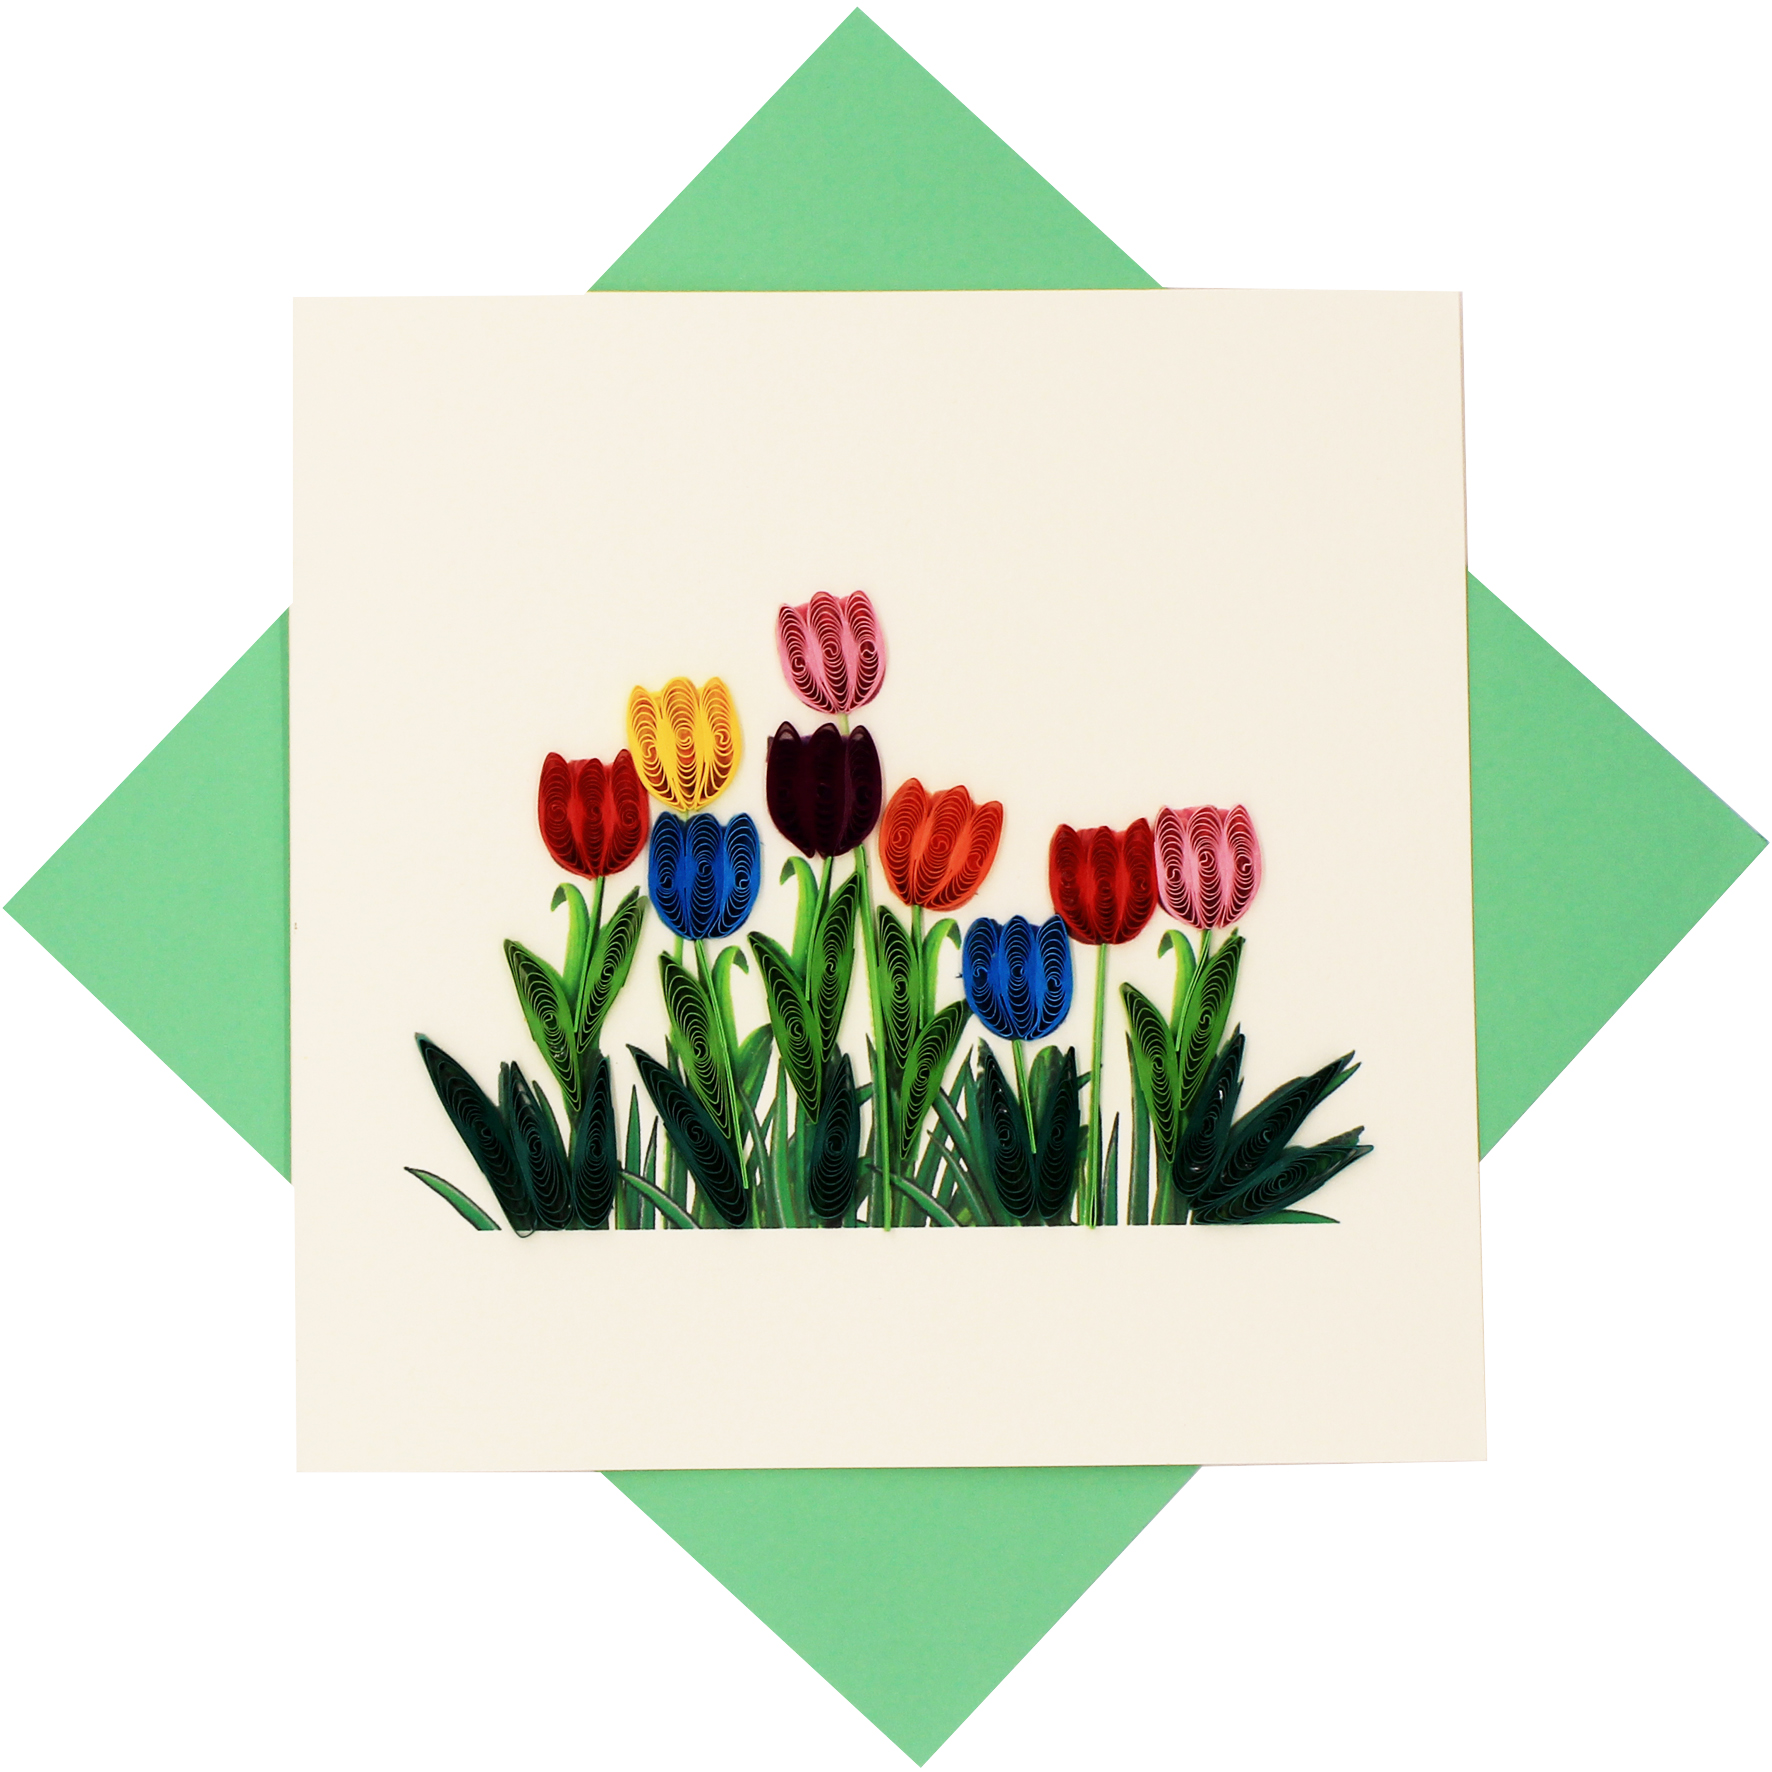 Thiệp Chúc Giấy Xoắn Thủ Công (Quilling Card) Hoa Tulip - Tặng Kèm Khung Giấy Để Bàn